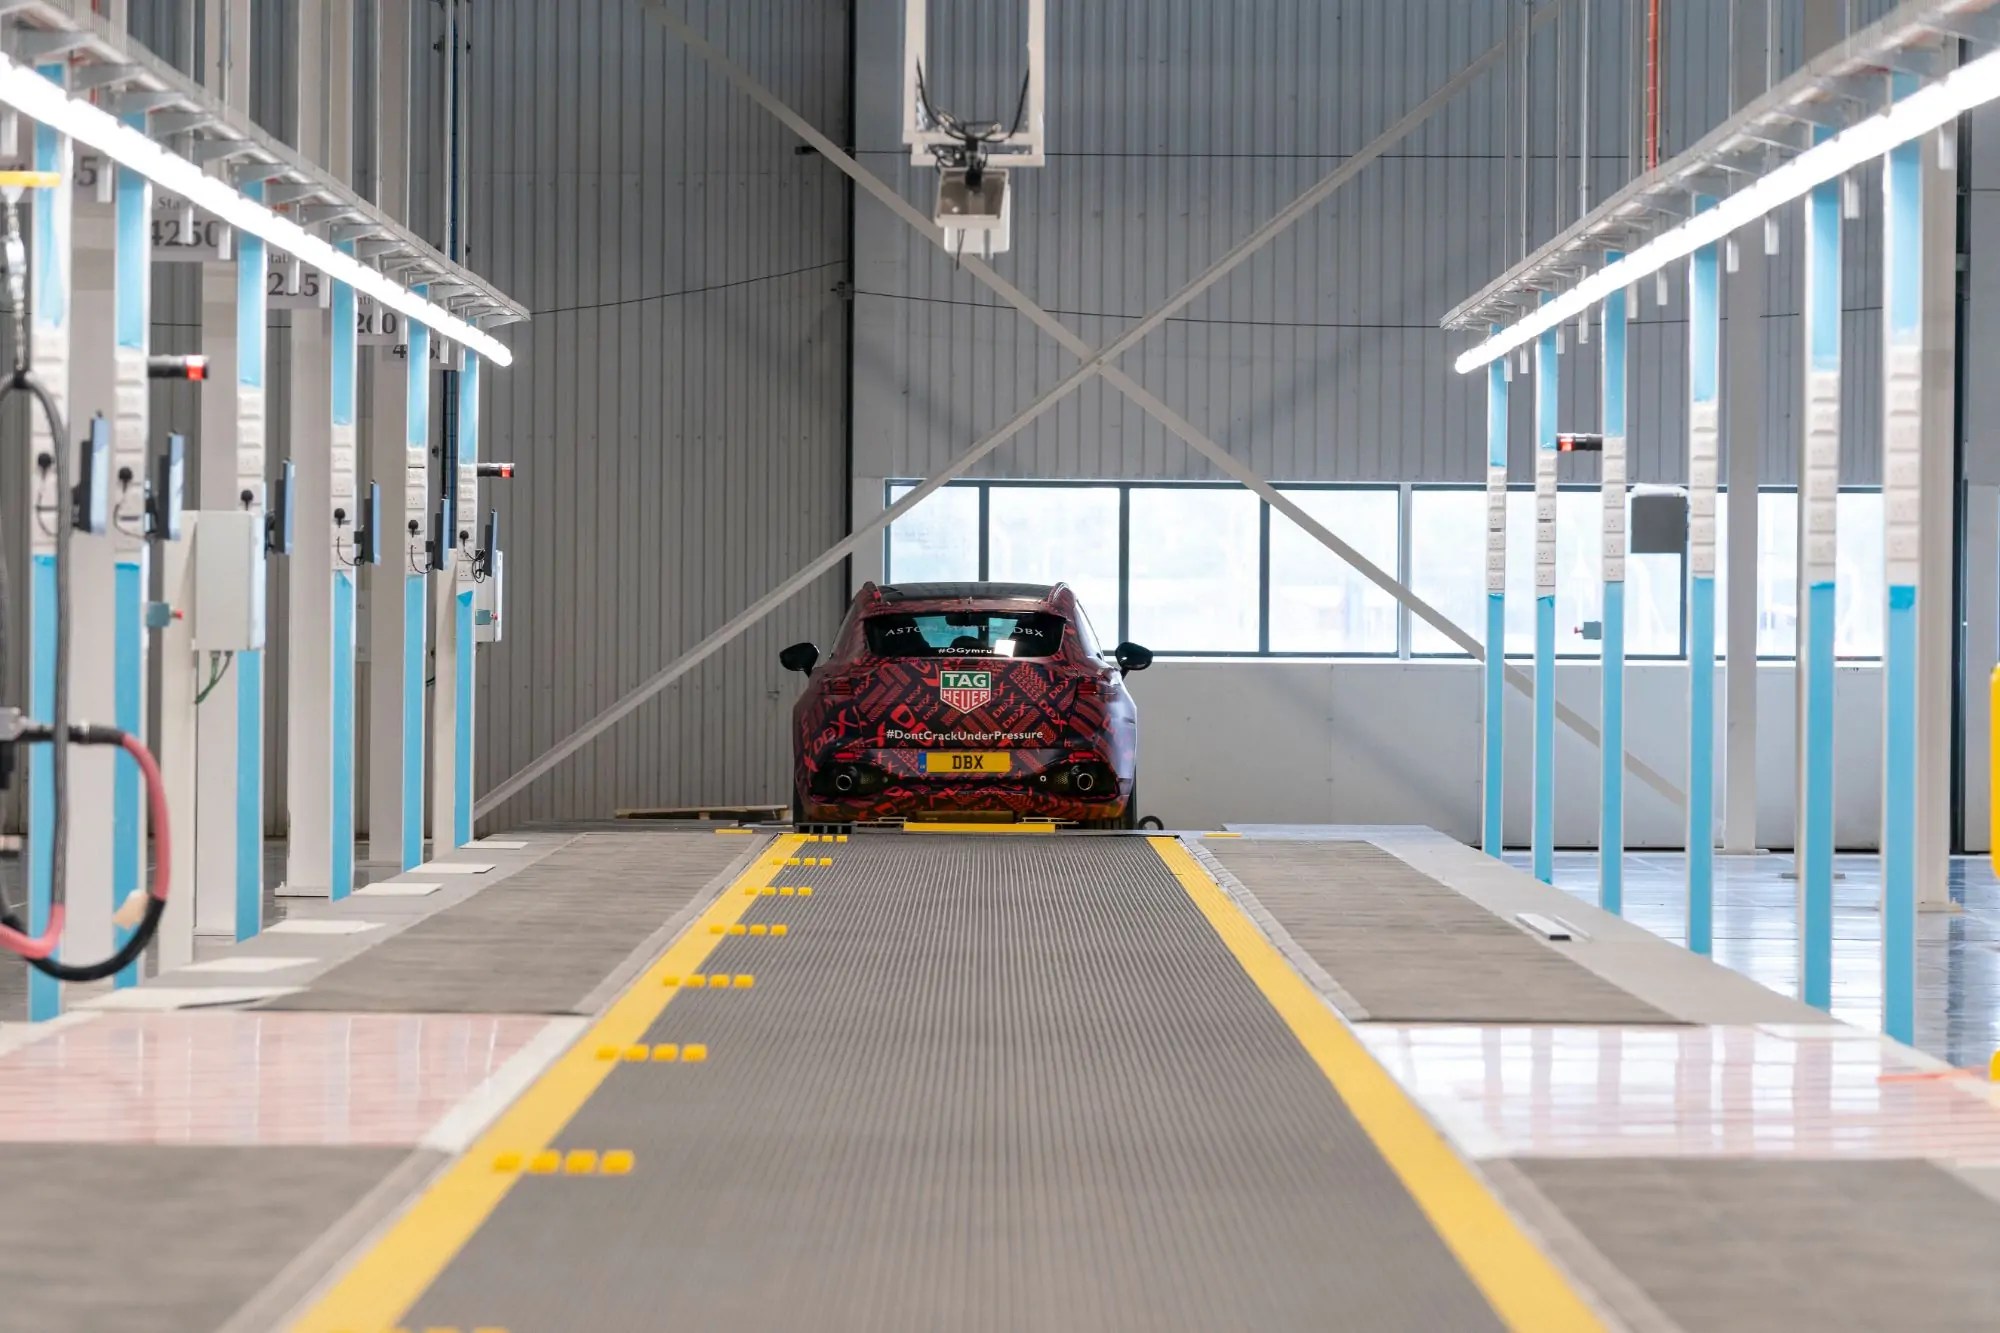 ‏‏أستون مارتن تبدأ بإنتاج أولى سياراتها في منشأتها الجديدة بمقاطعة ويلز‏